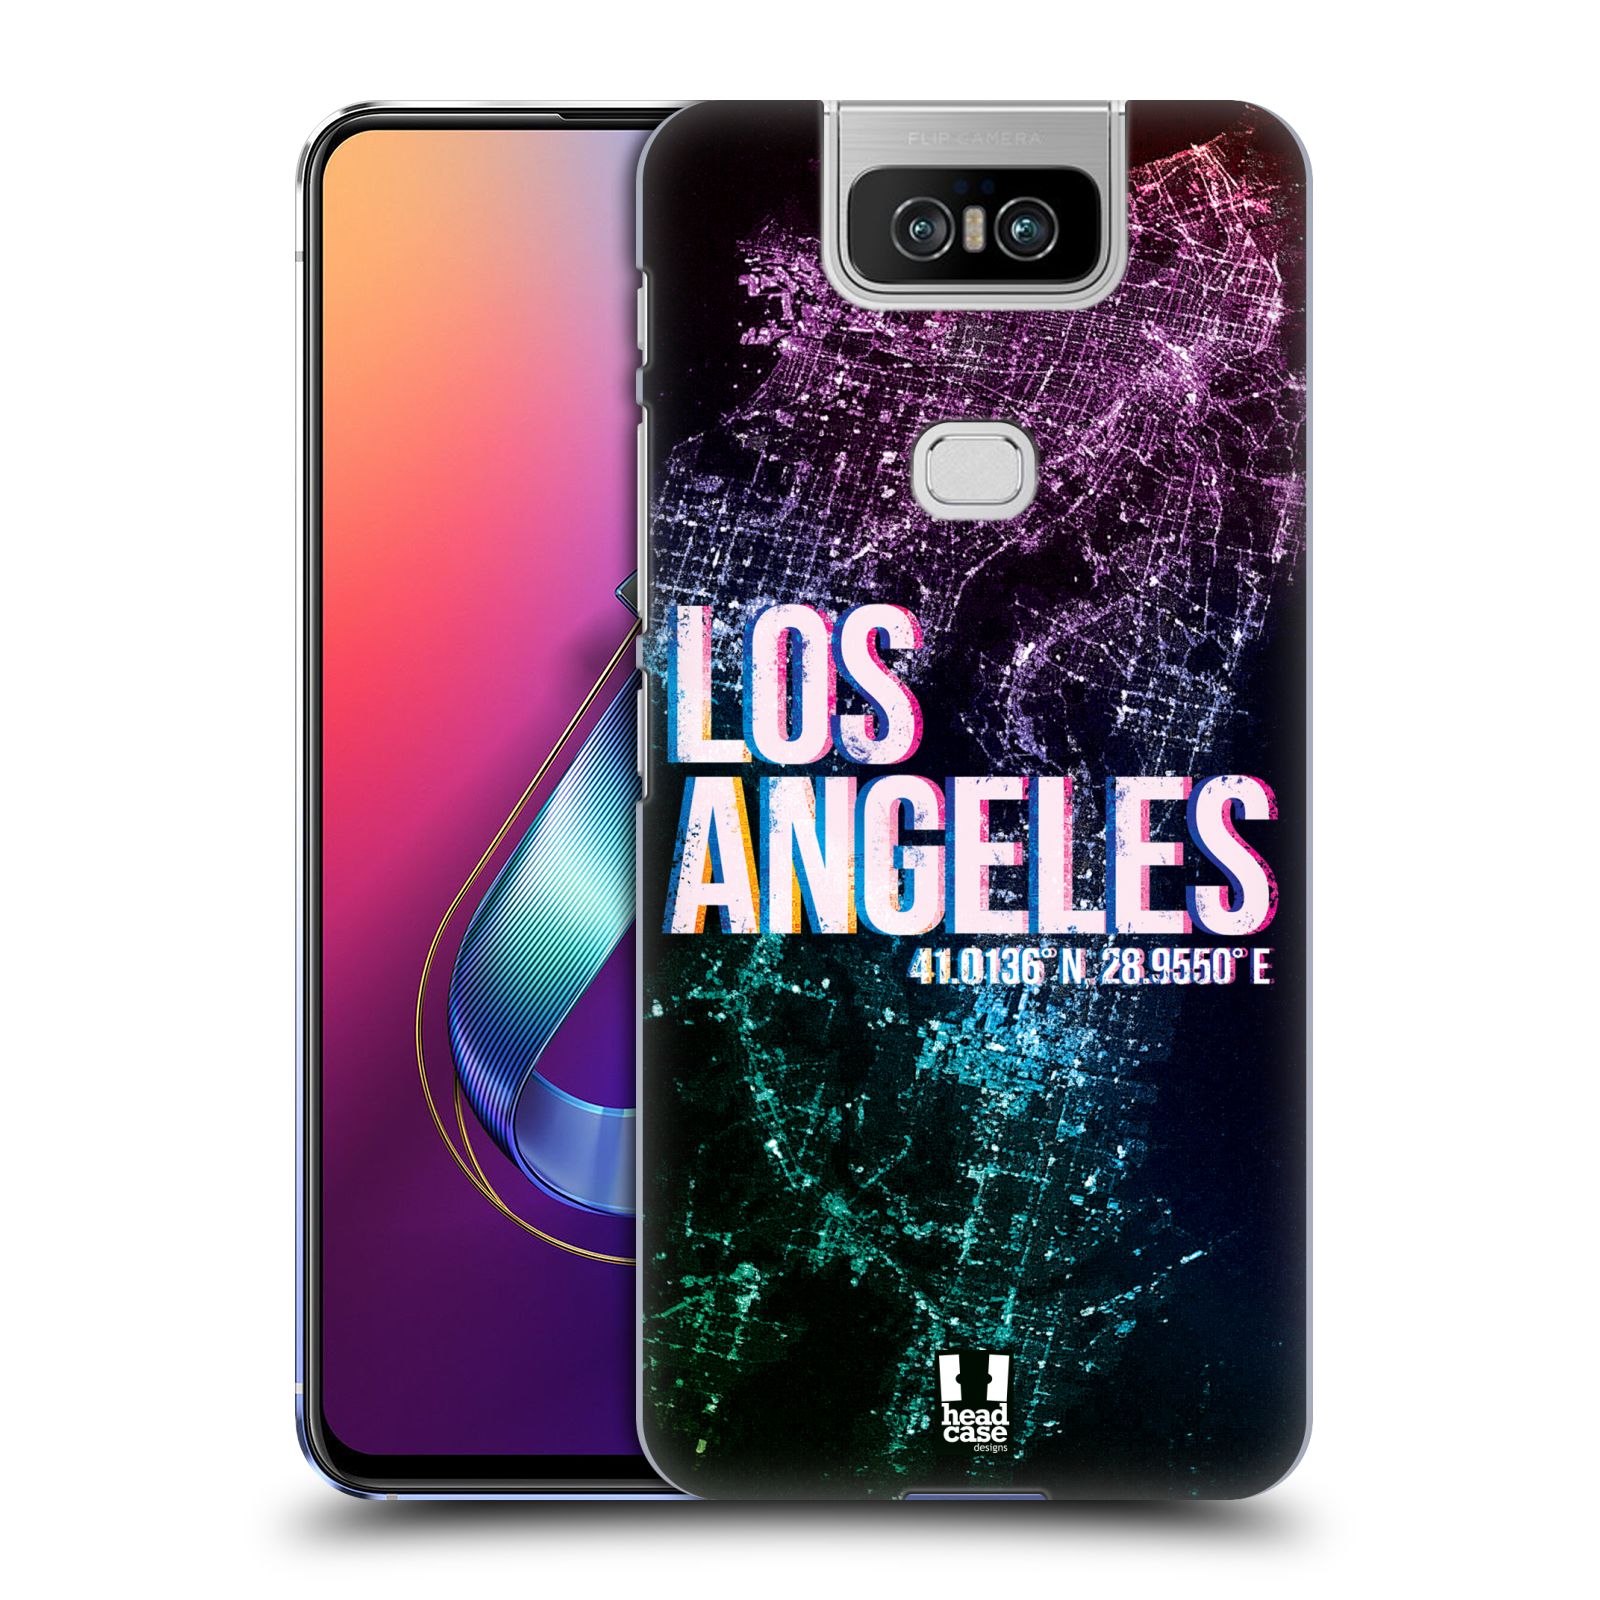 Pouzdro na mobil Asus Zenfone 6 ZS630KL - HEAD CASE - vzor Světla známých měst, Satelitní snímky fialová USA, LOS ANGELES